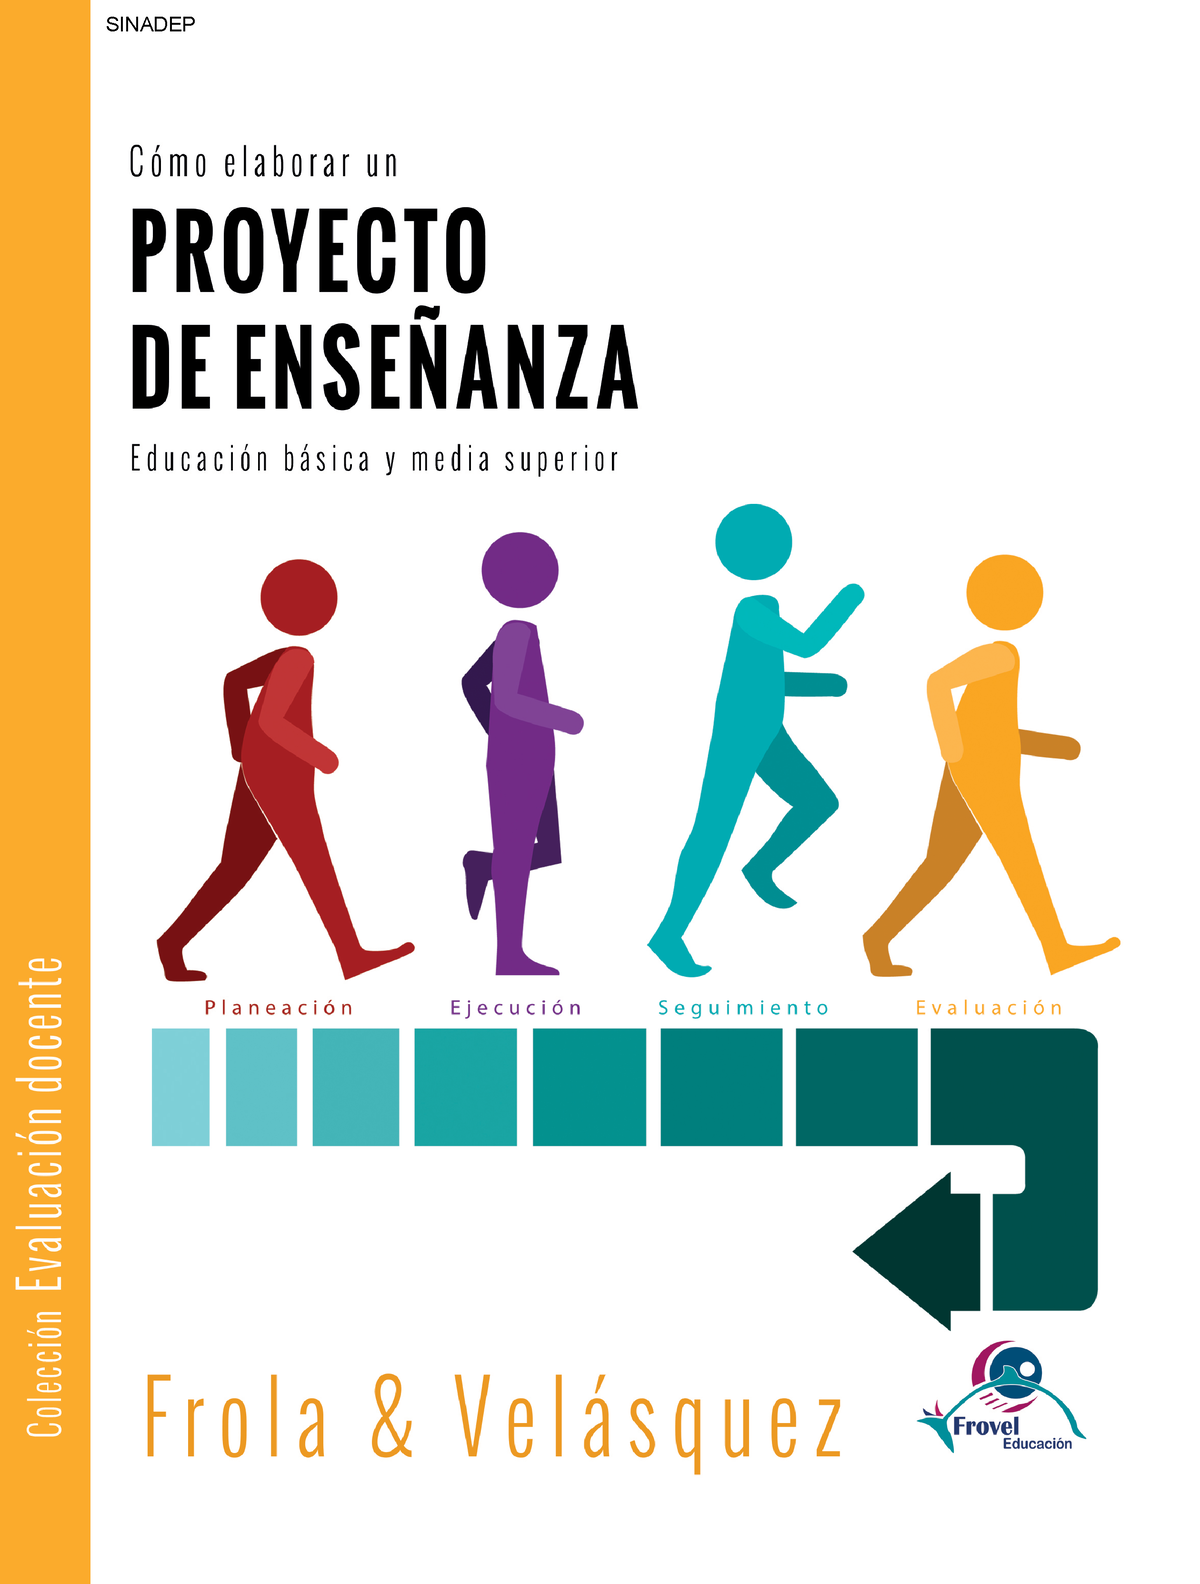 Como Elaborar Un Proyecto De Enseñanza Sinadep © Editorial Frovel Educación Isbn En Trámite 3459